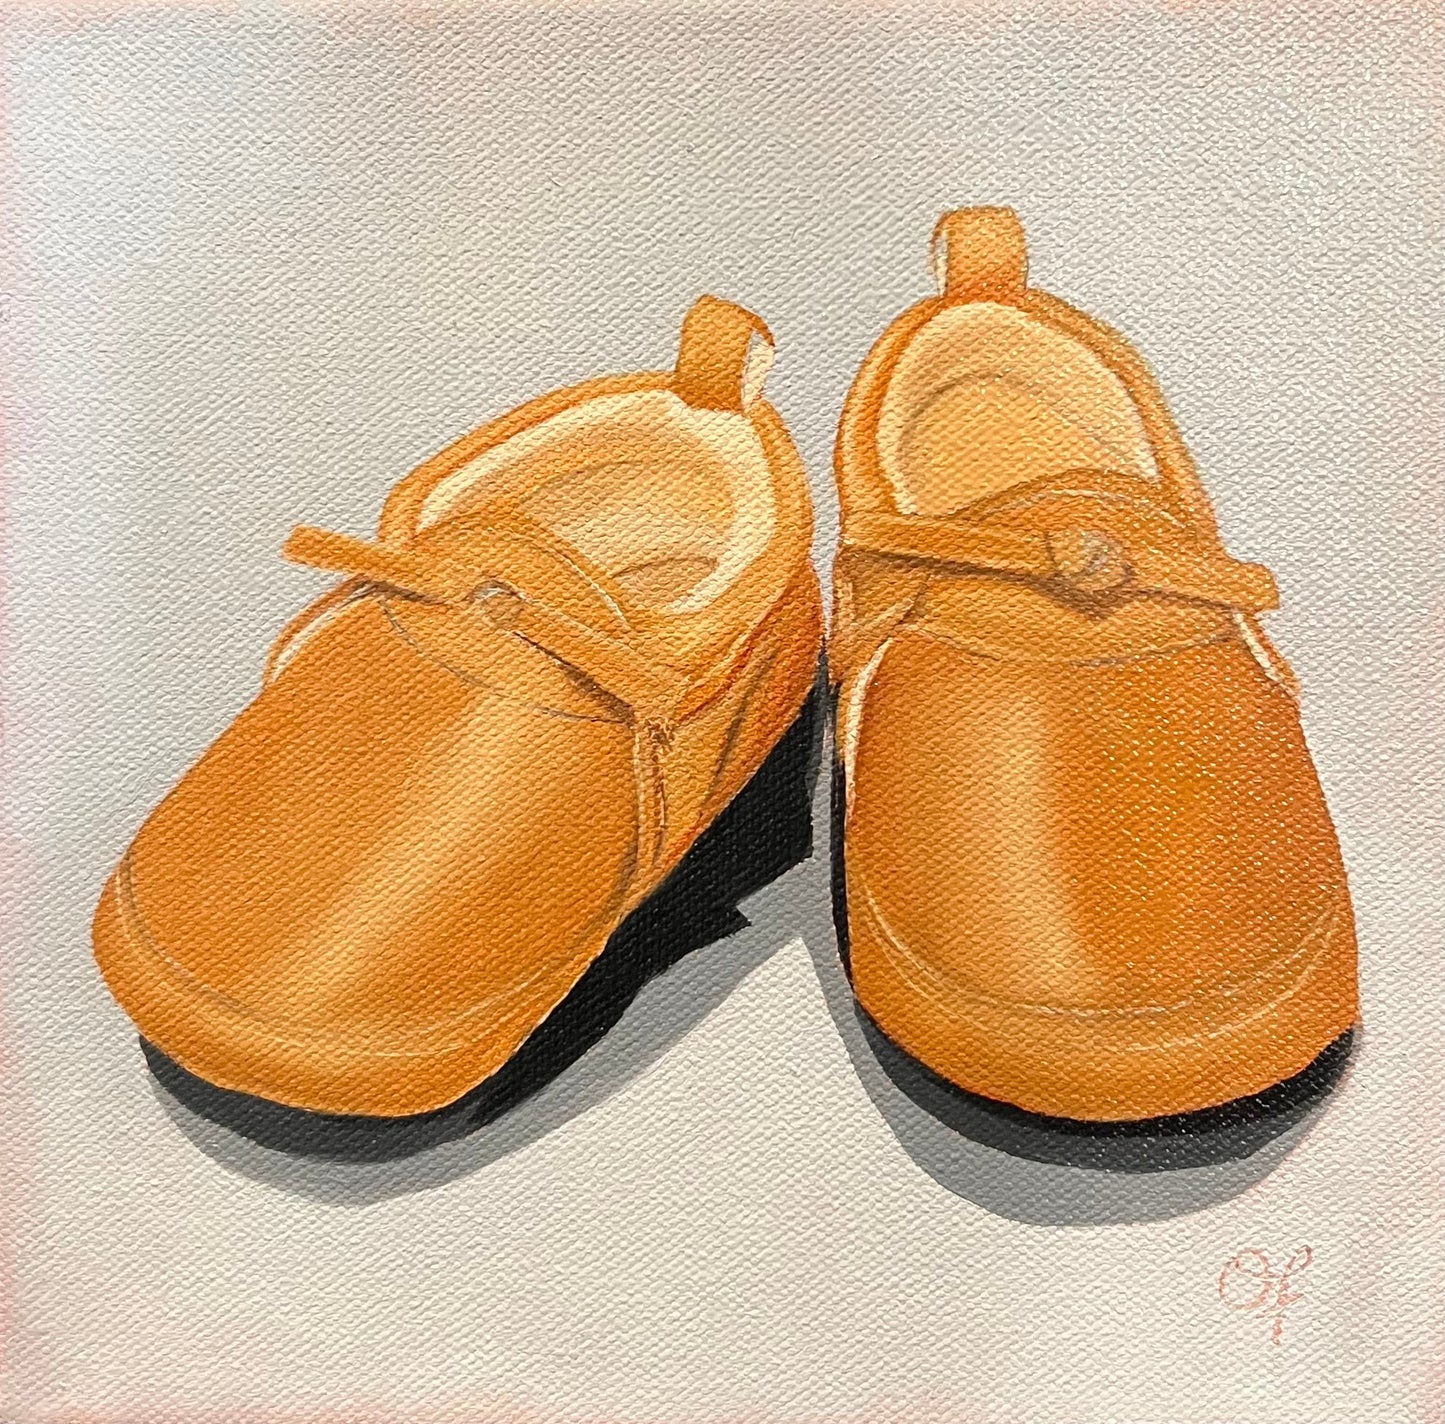 Oliver's baby shoe's - Olivia Franklin Art